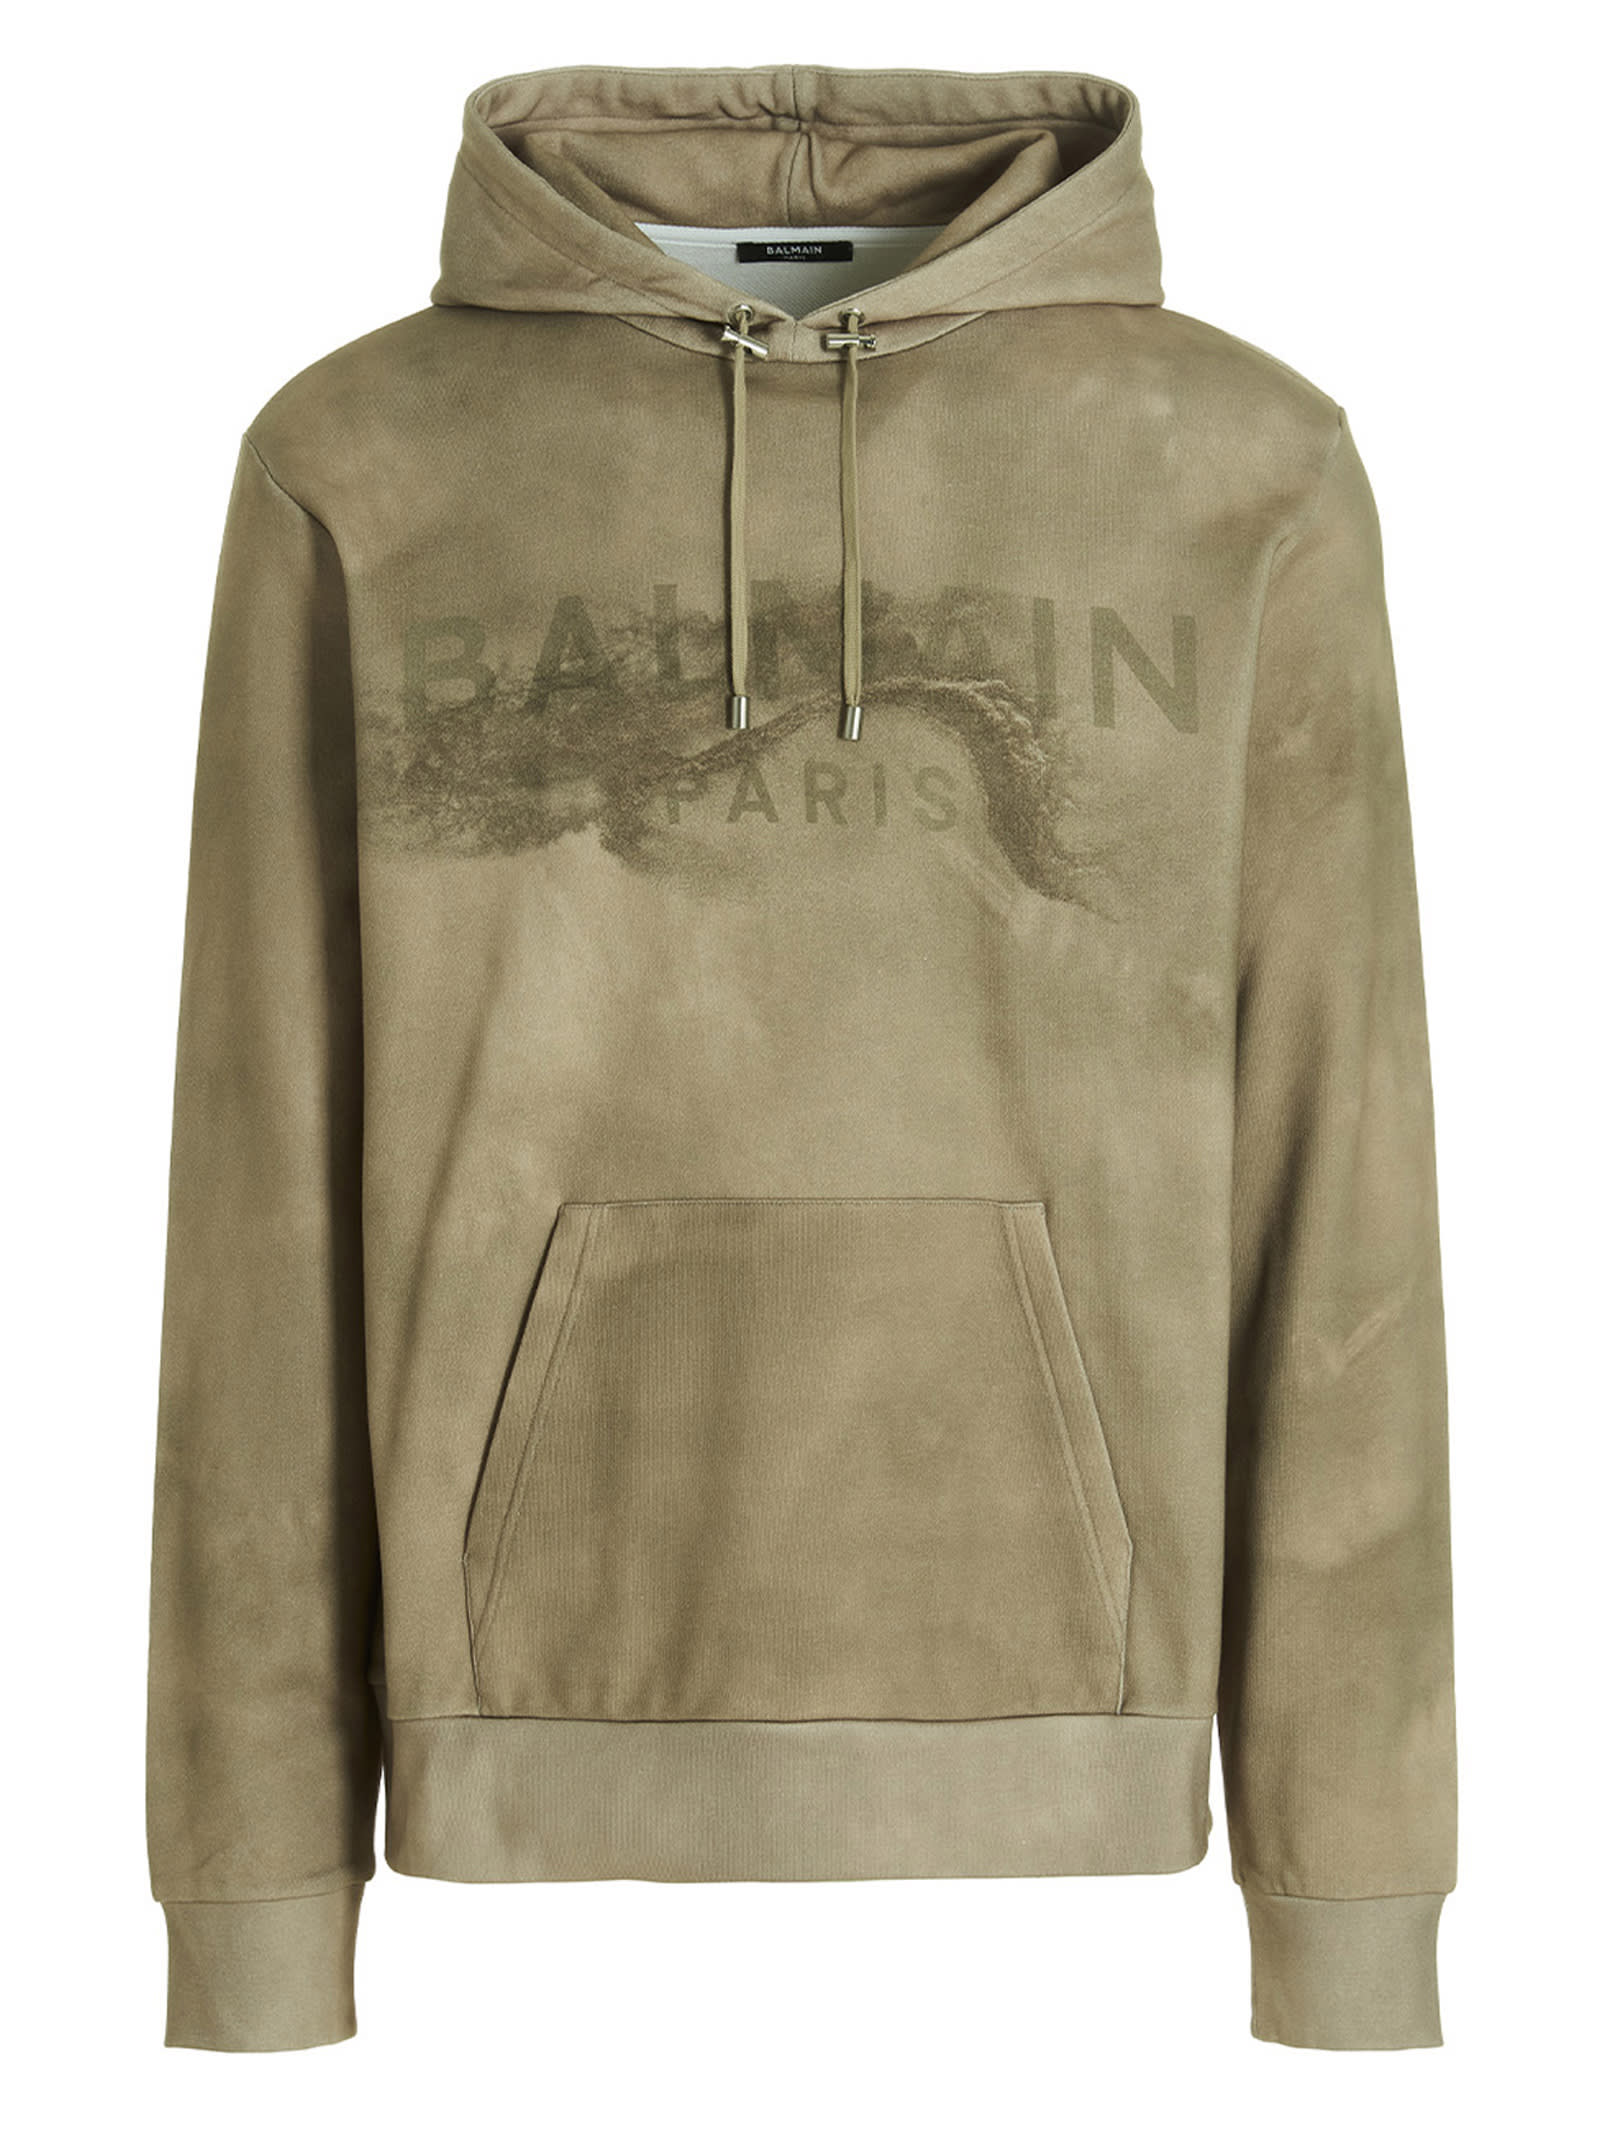 Desert logo hoodie, Balmain, Shop Men's Designer Balmain Online in Canada